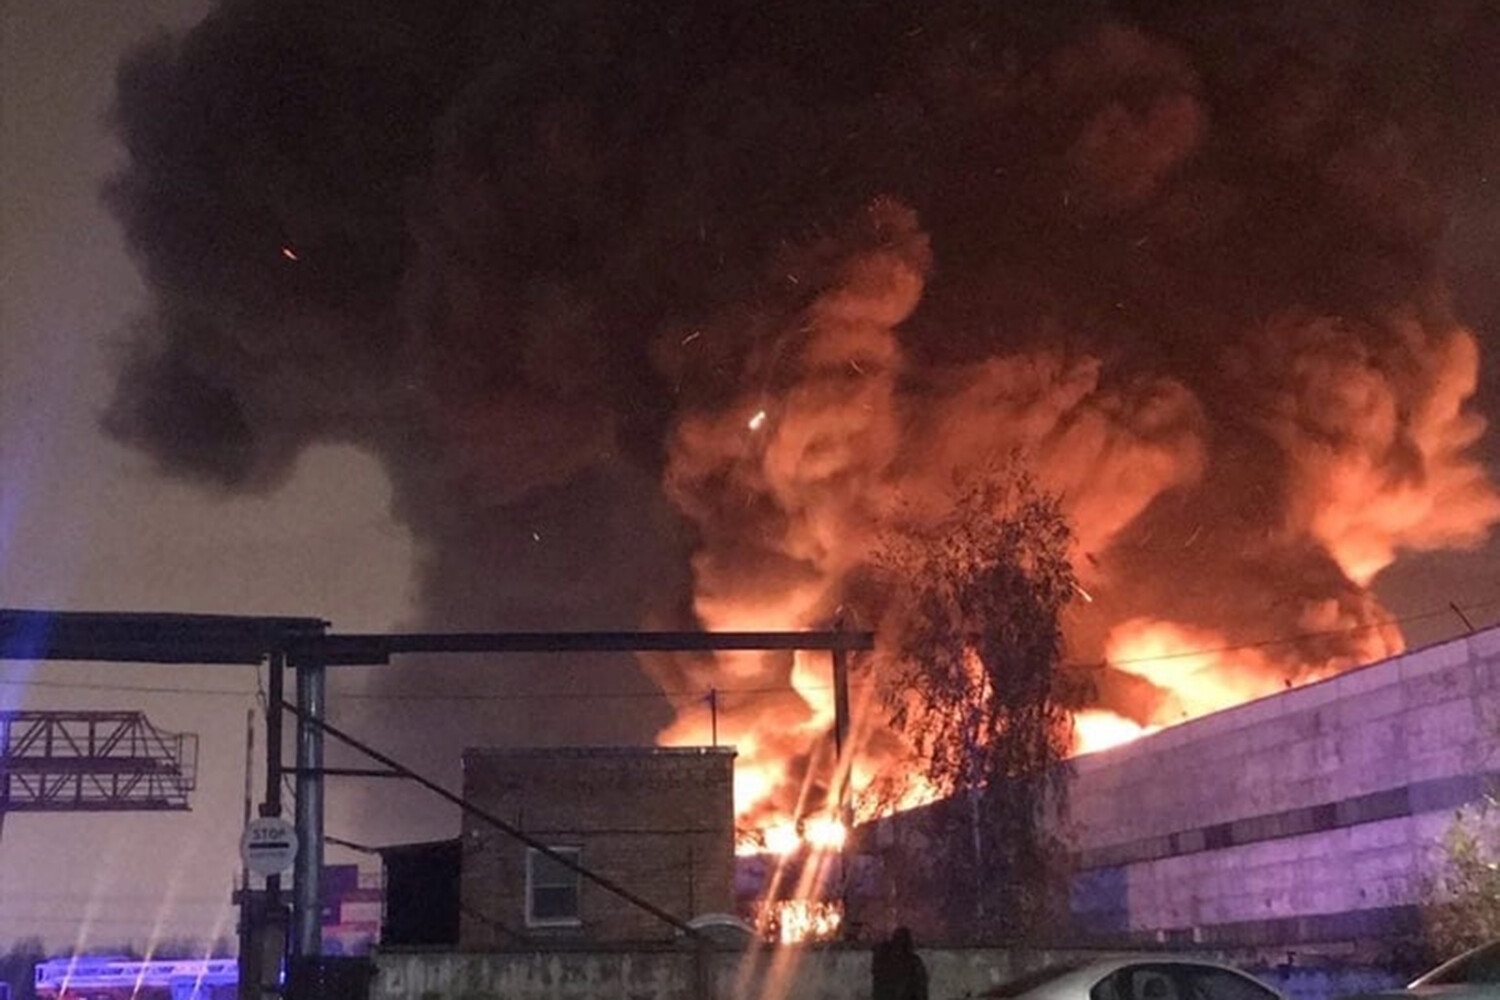 МЧС: крыша горящего склада в Петербурге обвалилась на 9 тыс. кв. метров